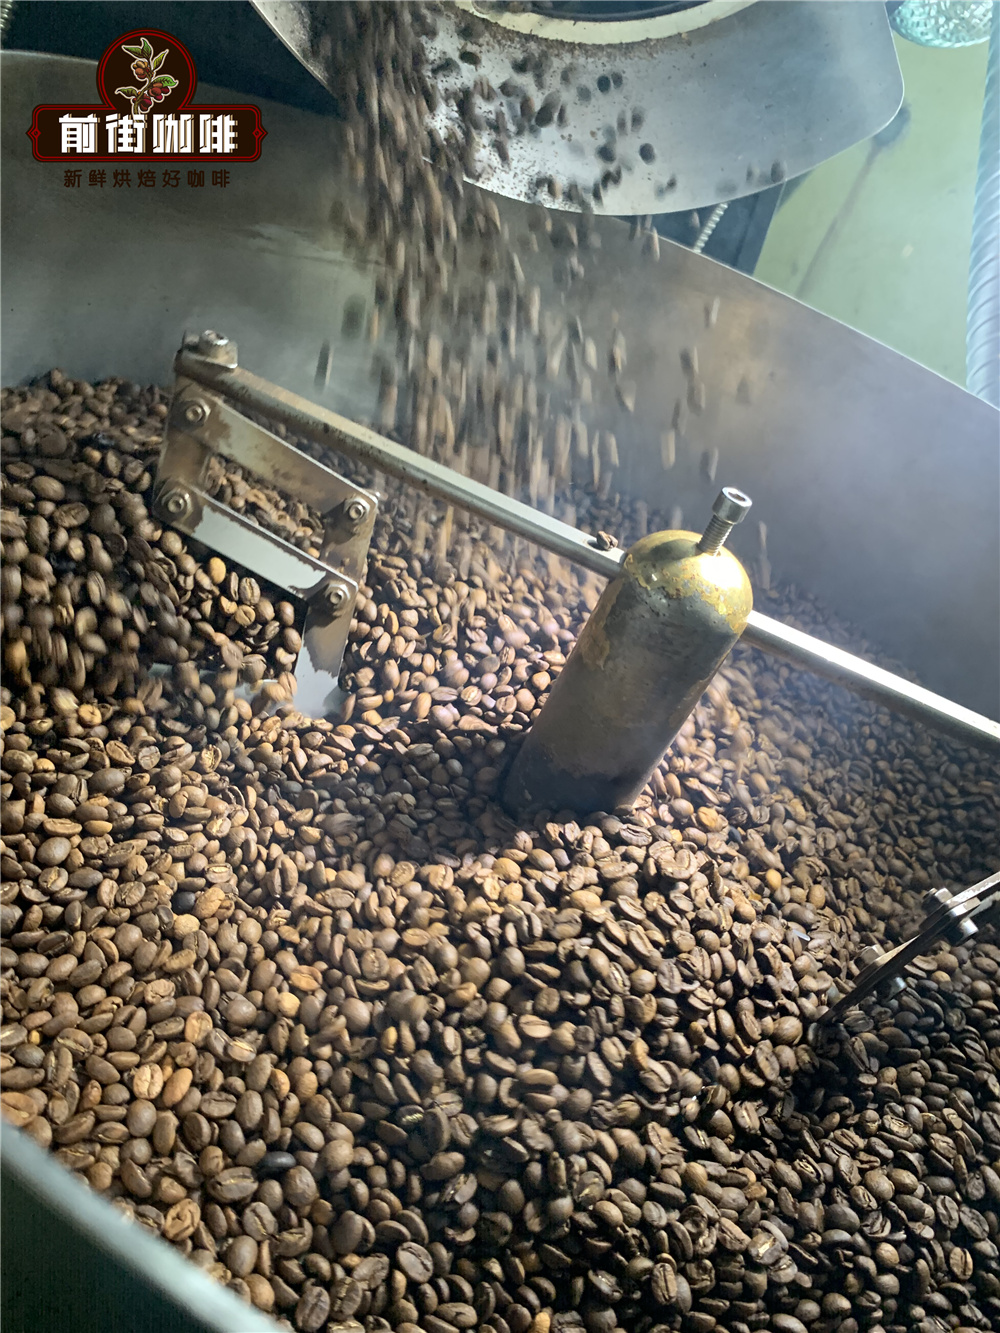 老蘇門答臘陳年咖啡和雪莉咖啡的桶裝發酵處理方法有什麼不同